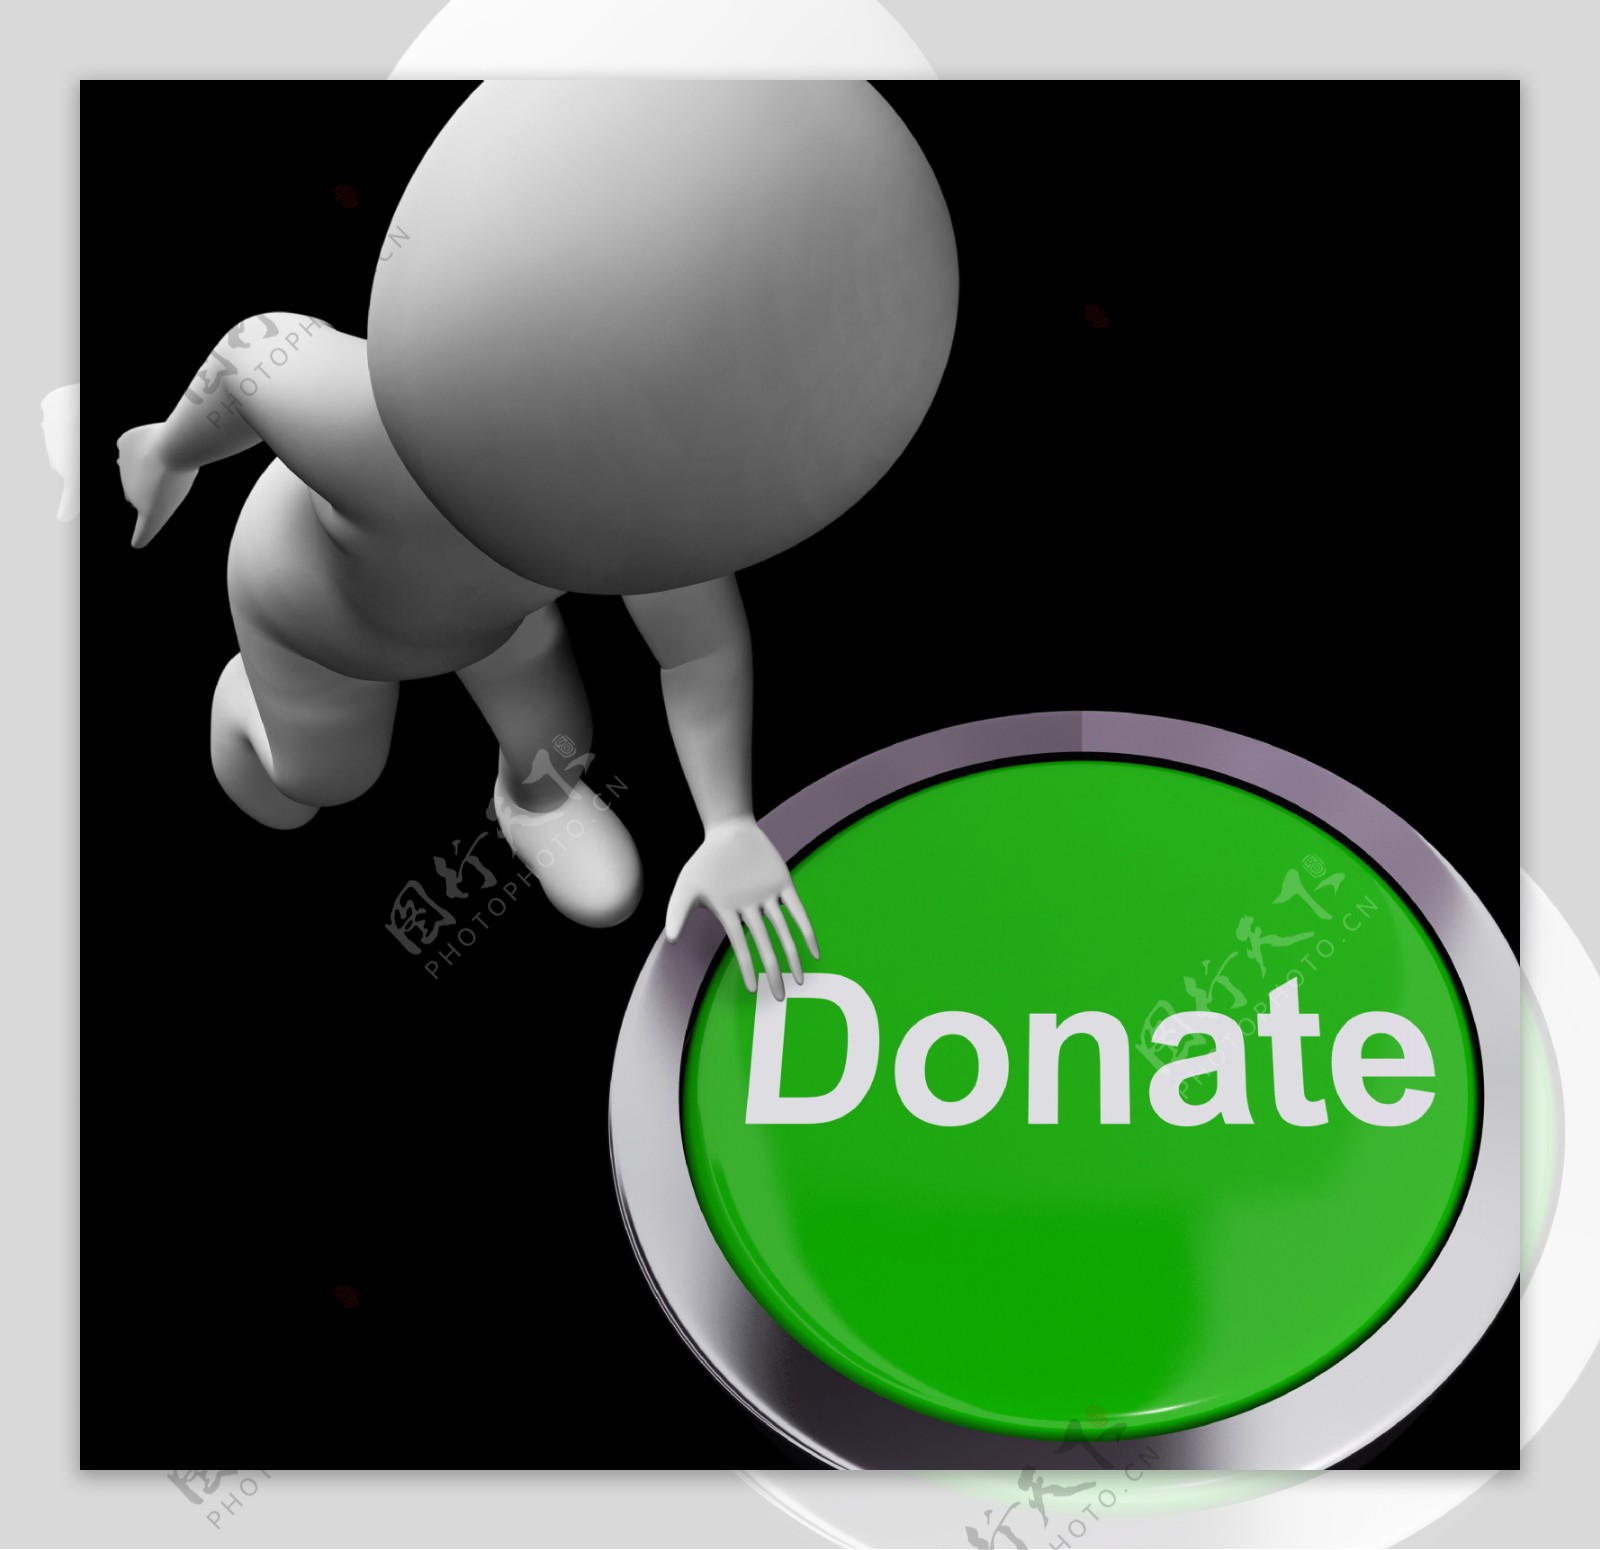 捐赠按钮显示慈善捐赠和募捐